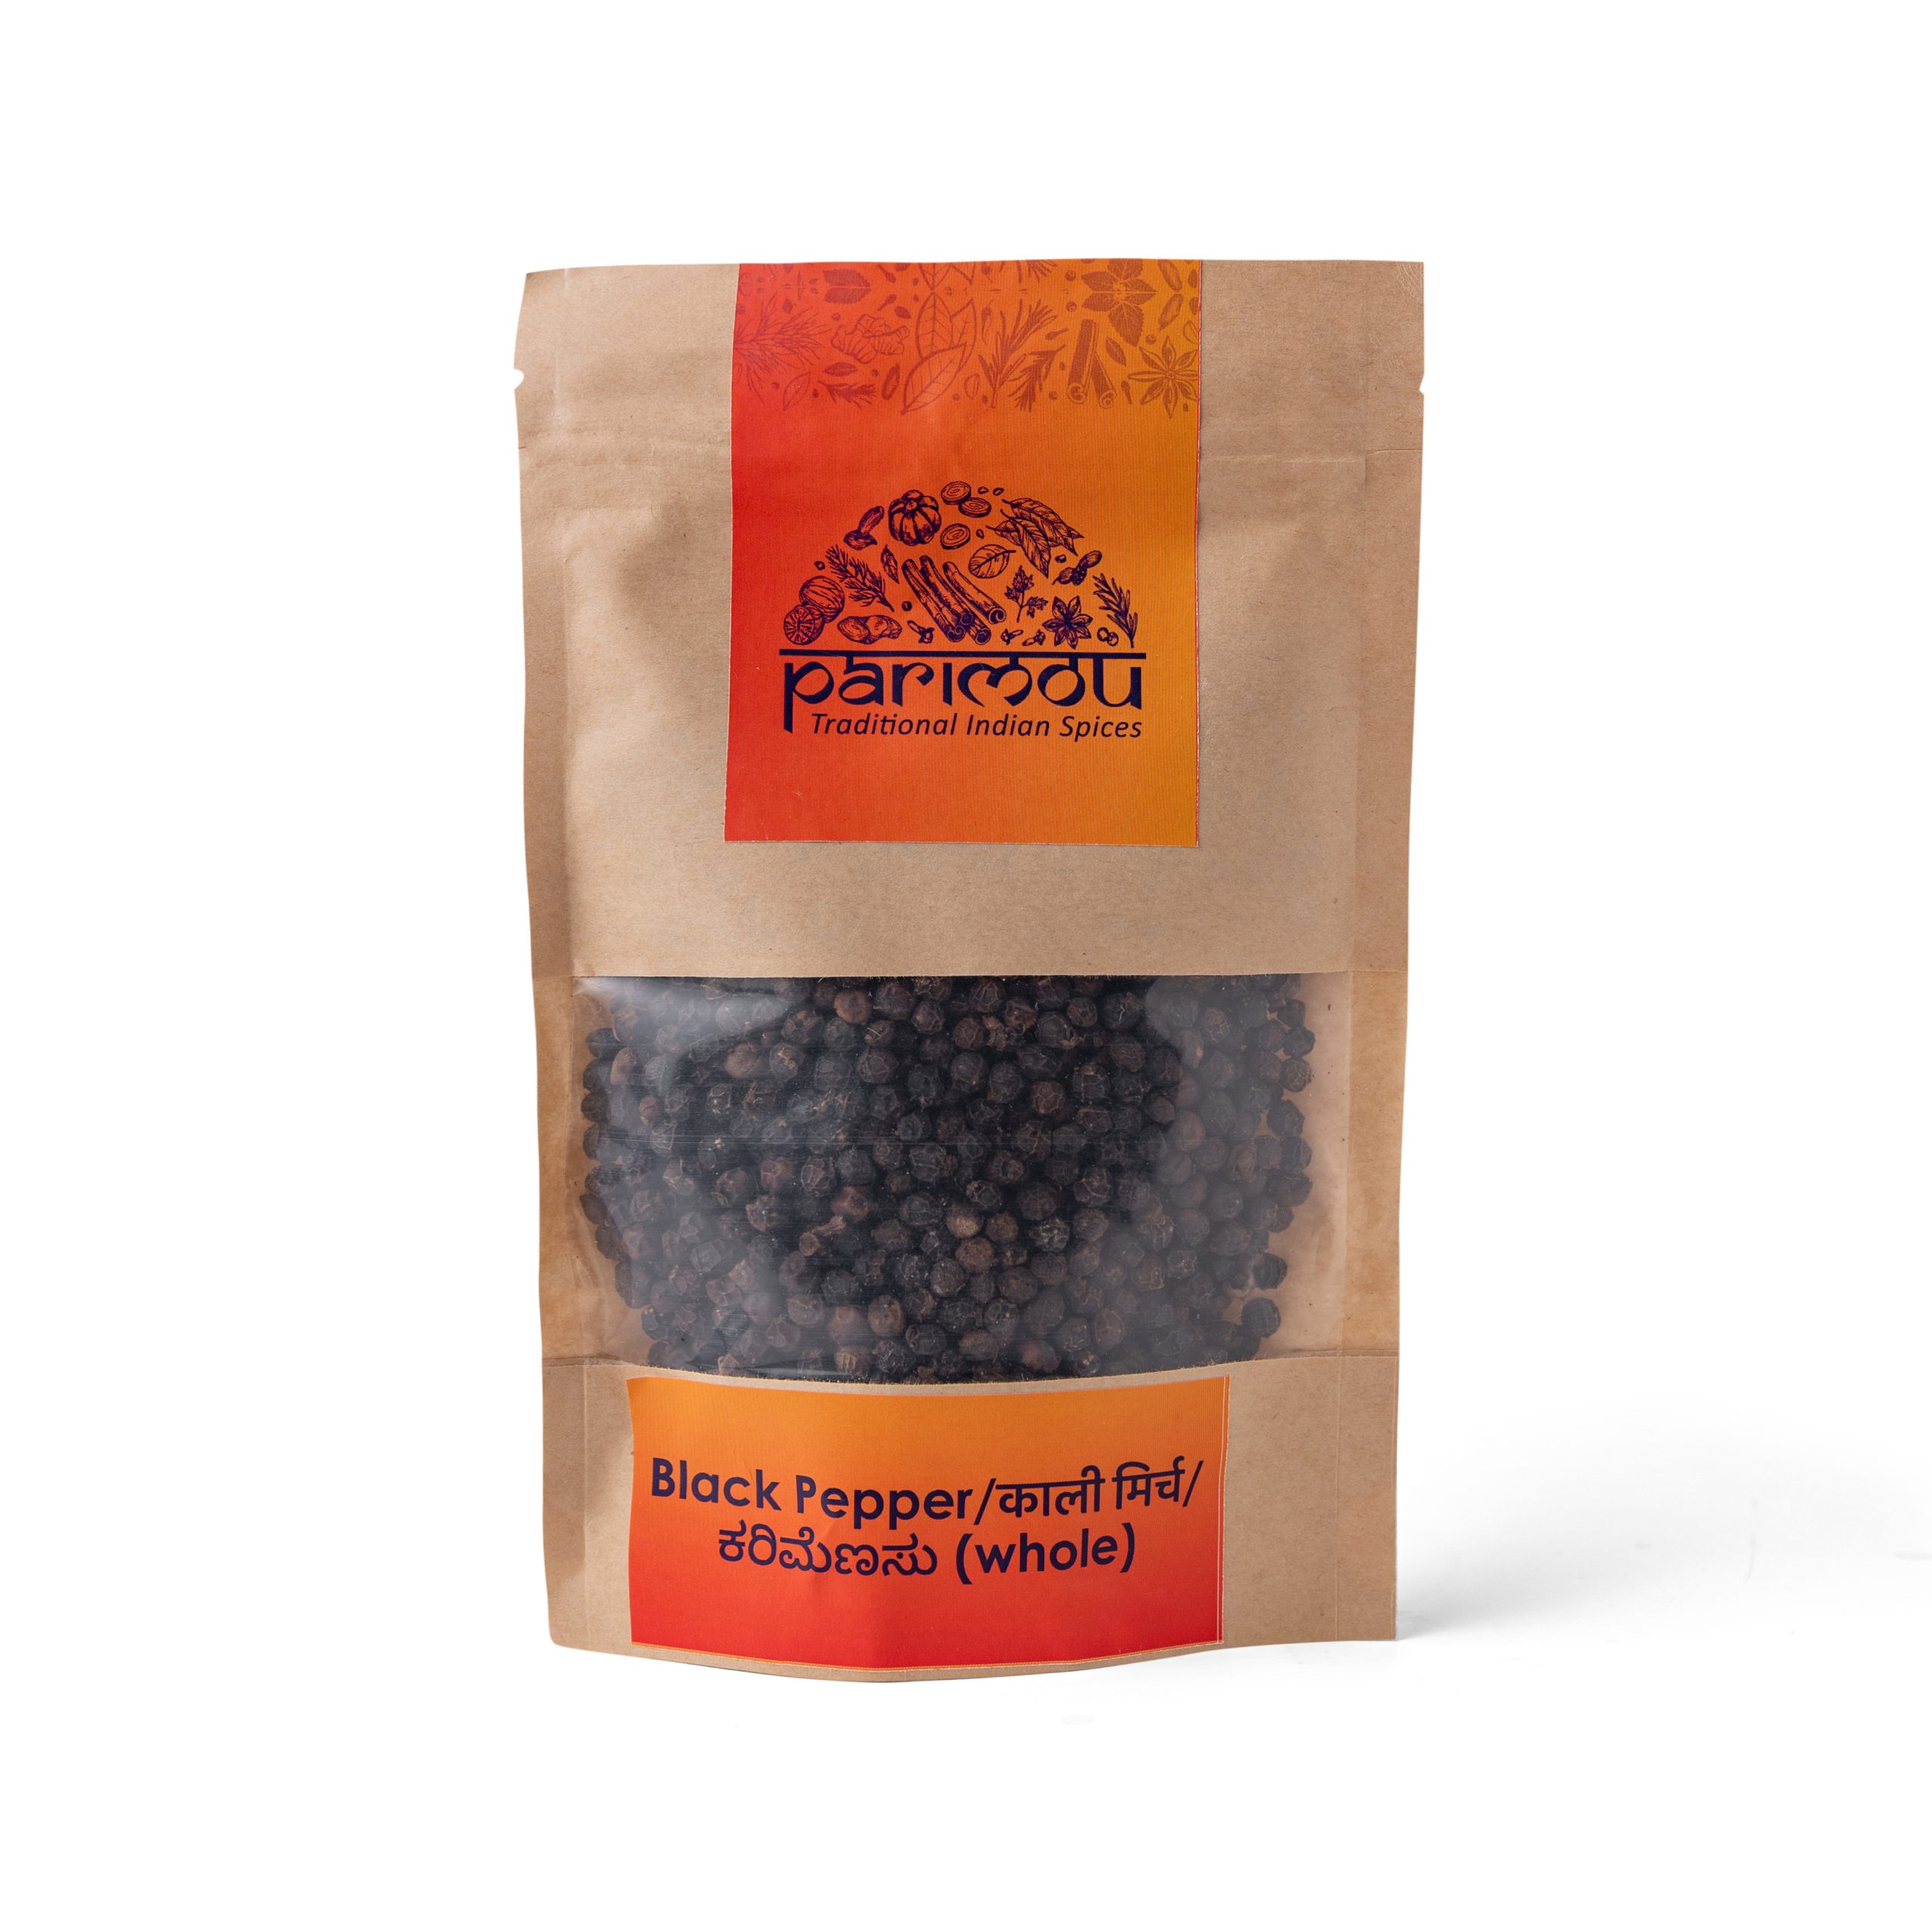 Product: Parimou Spices- Black Pepper (Whole)